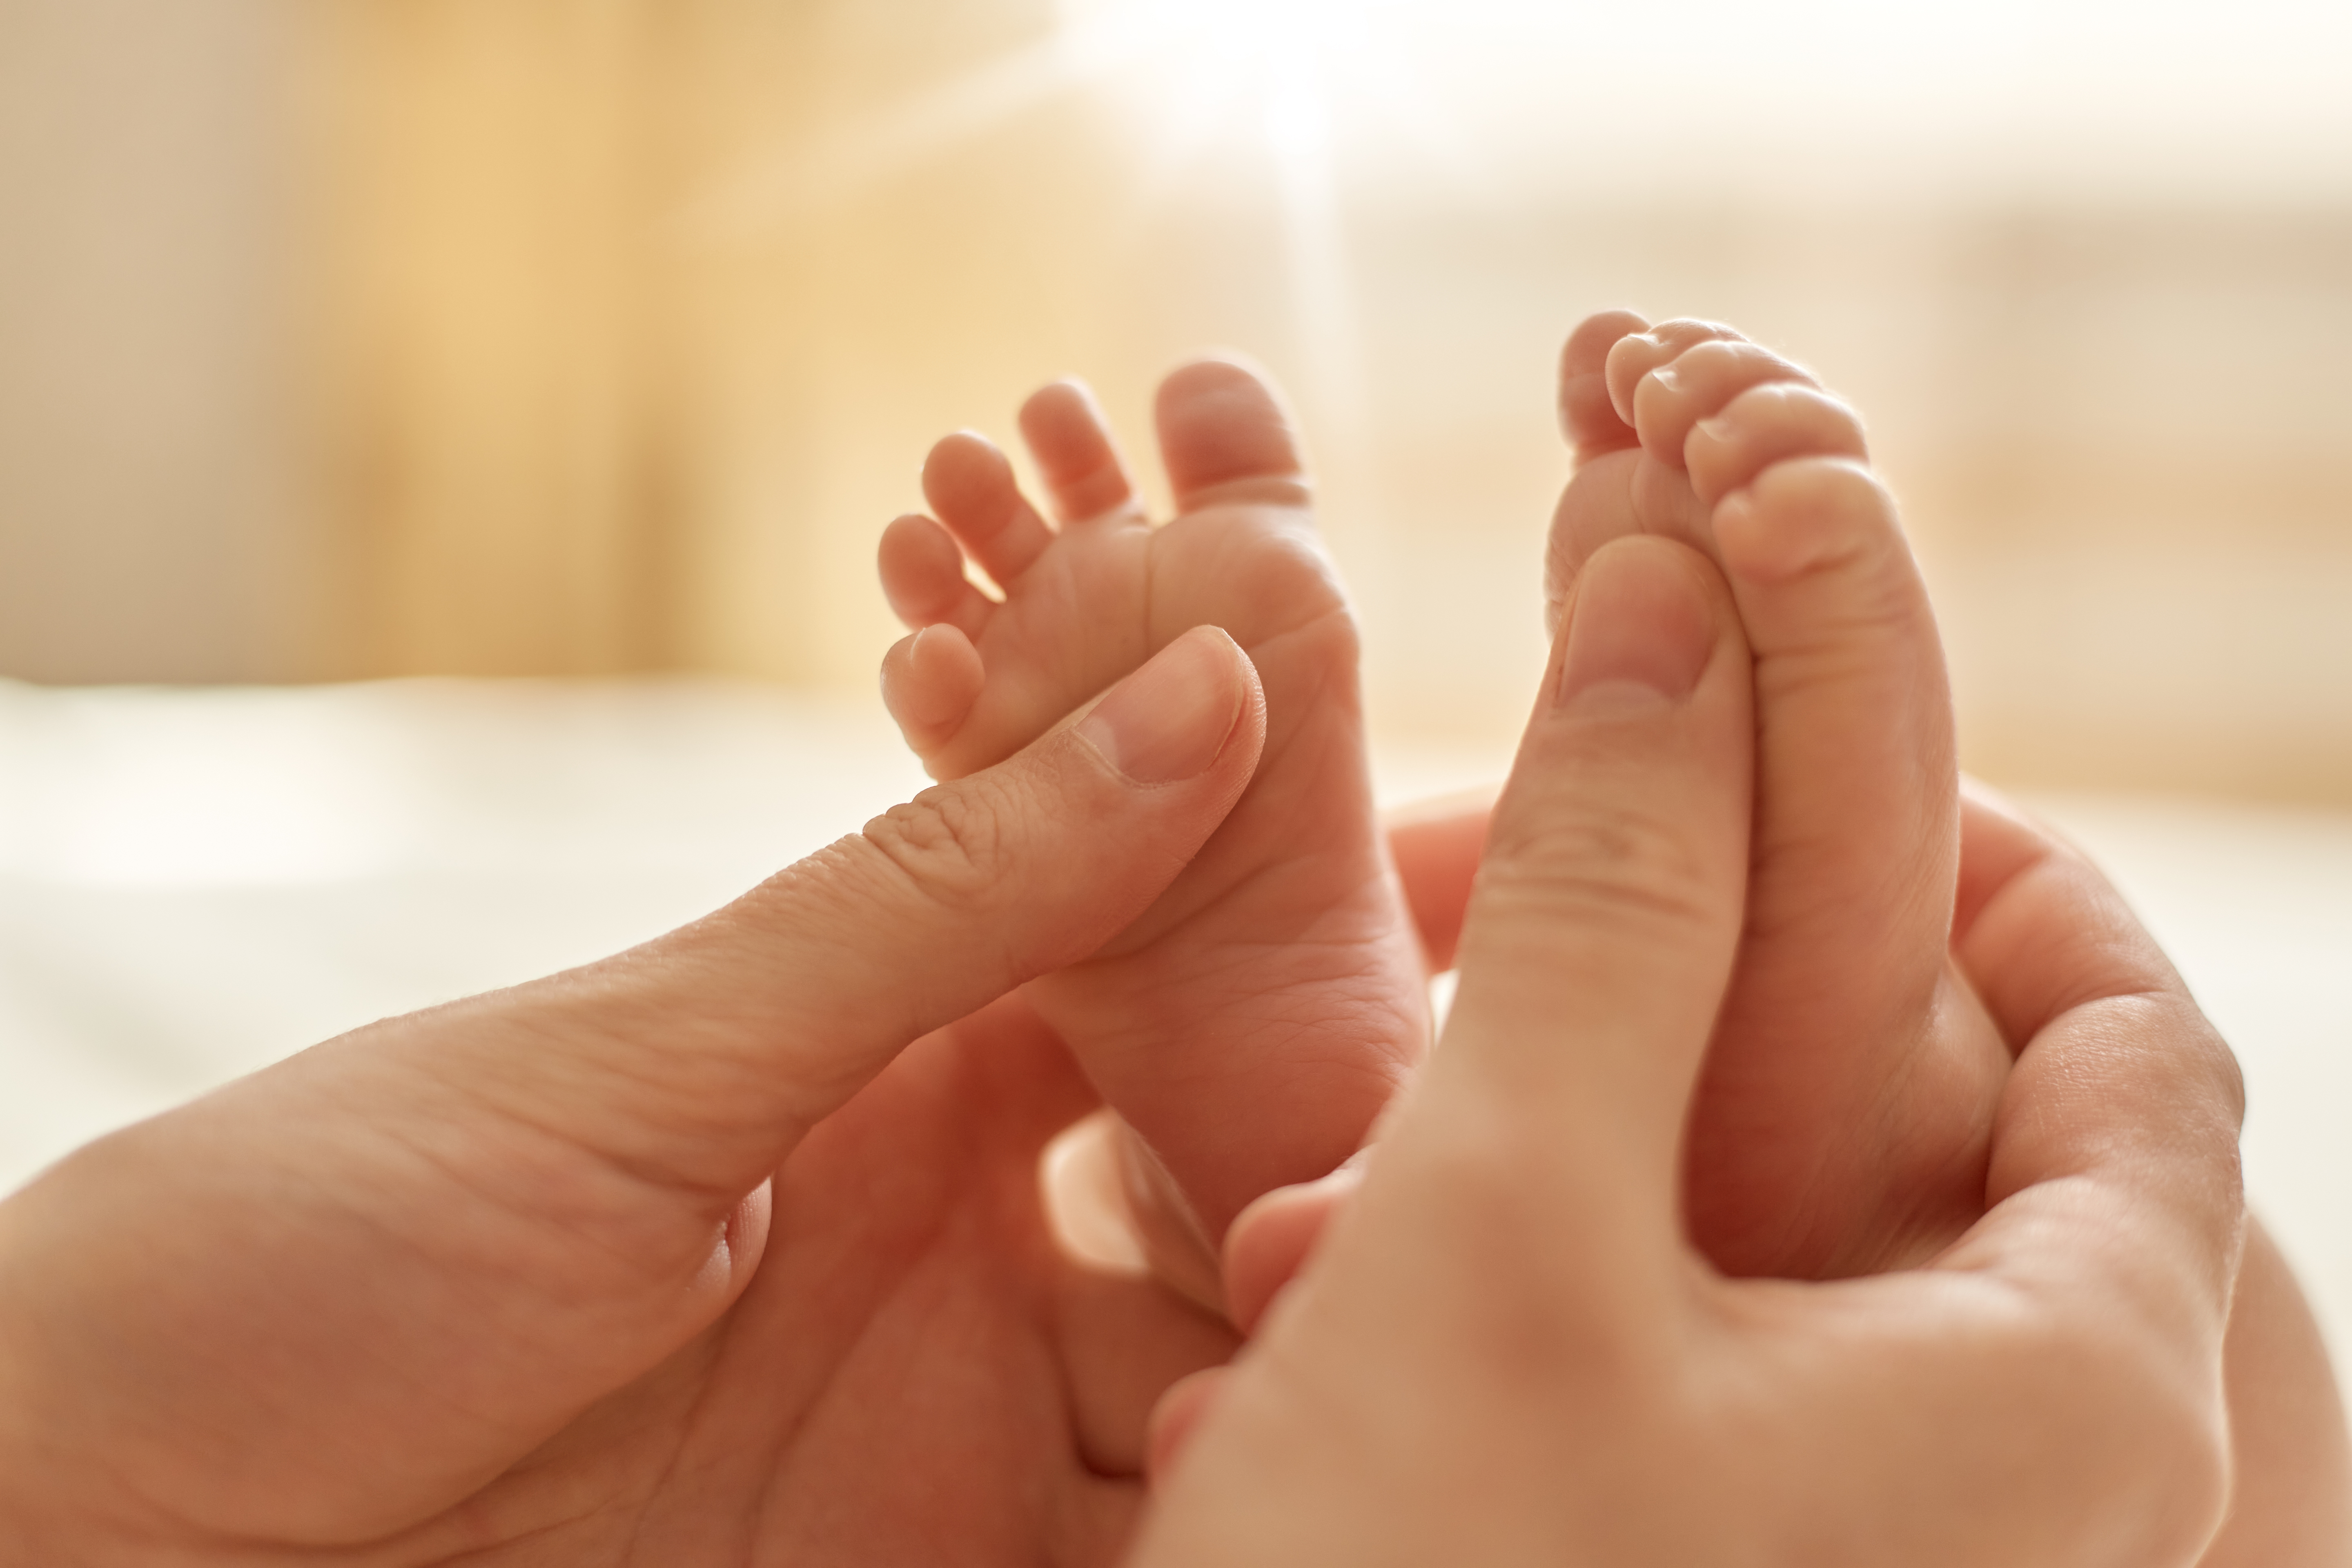 Comment mesurer les pieds d'un enfant ? - PETITES FRIPOUILLES